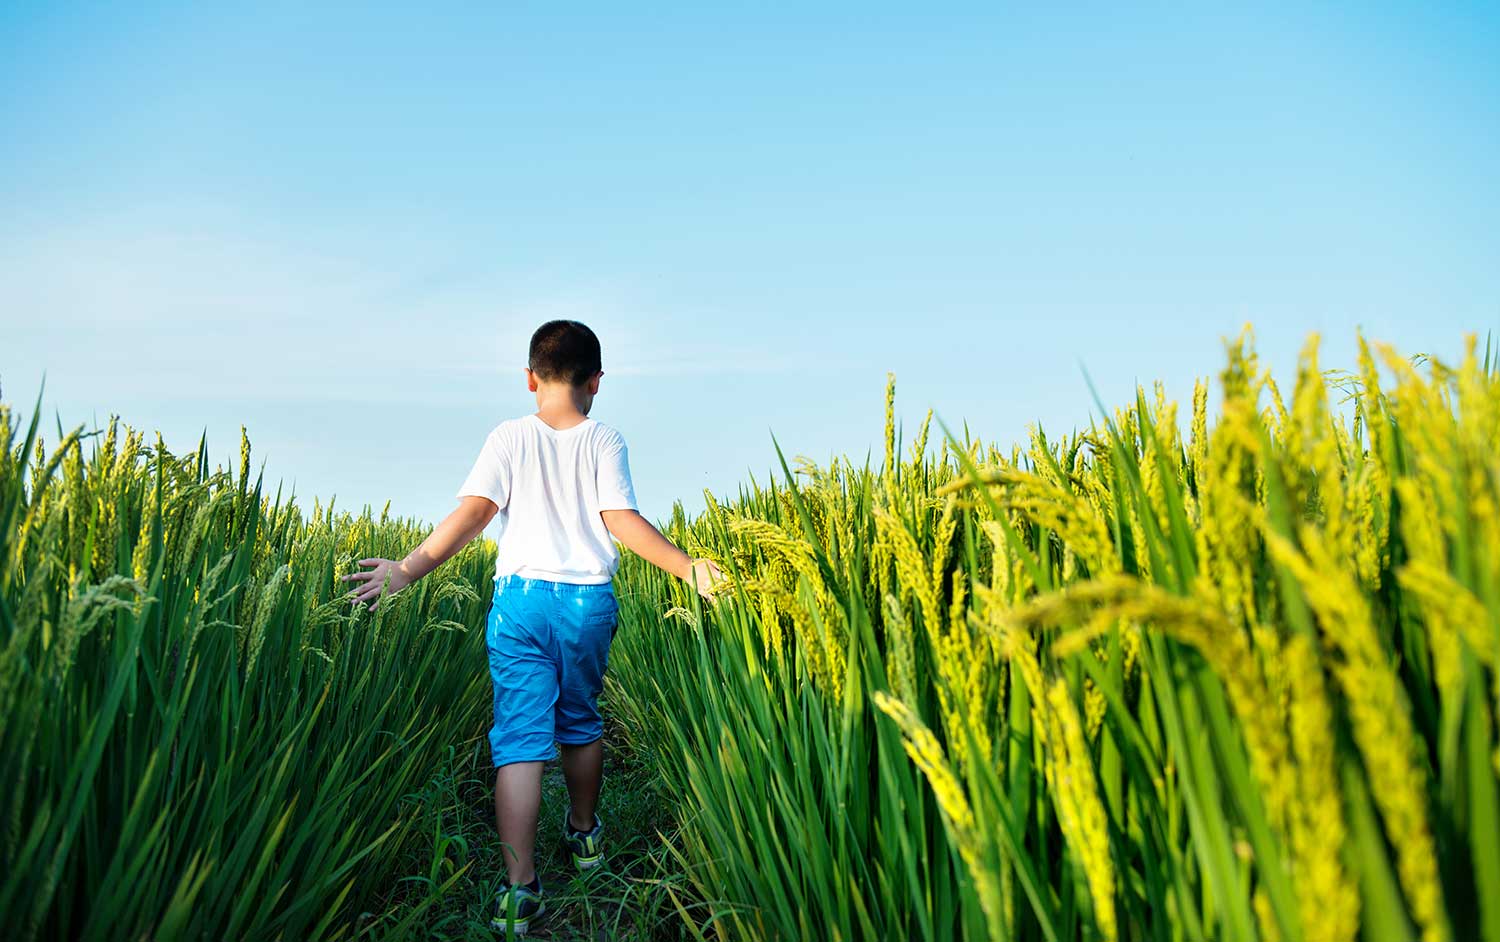 Child in crop field.